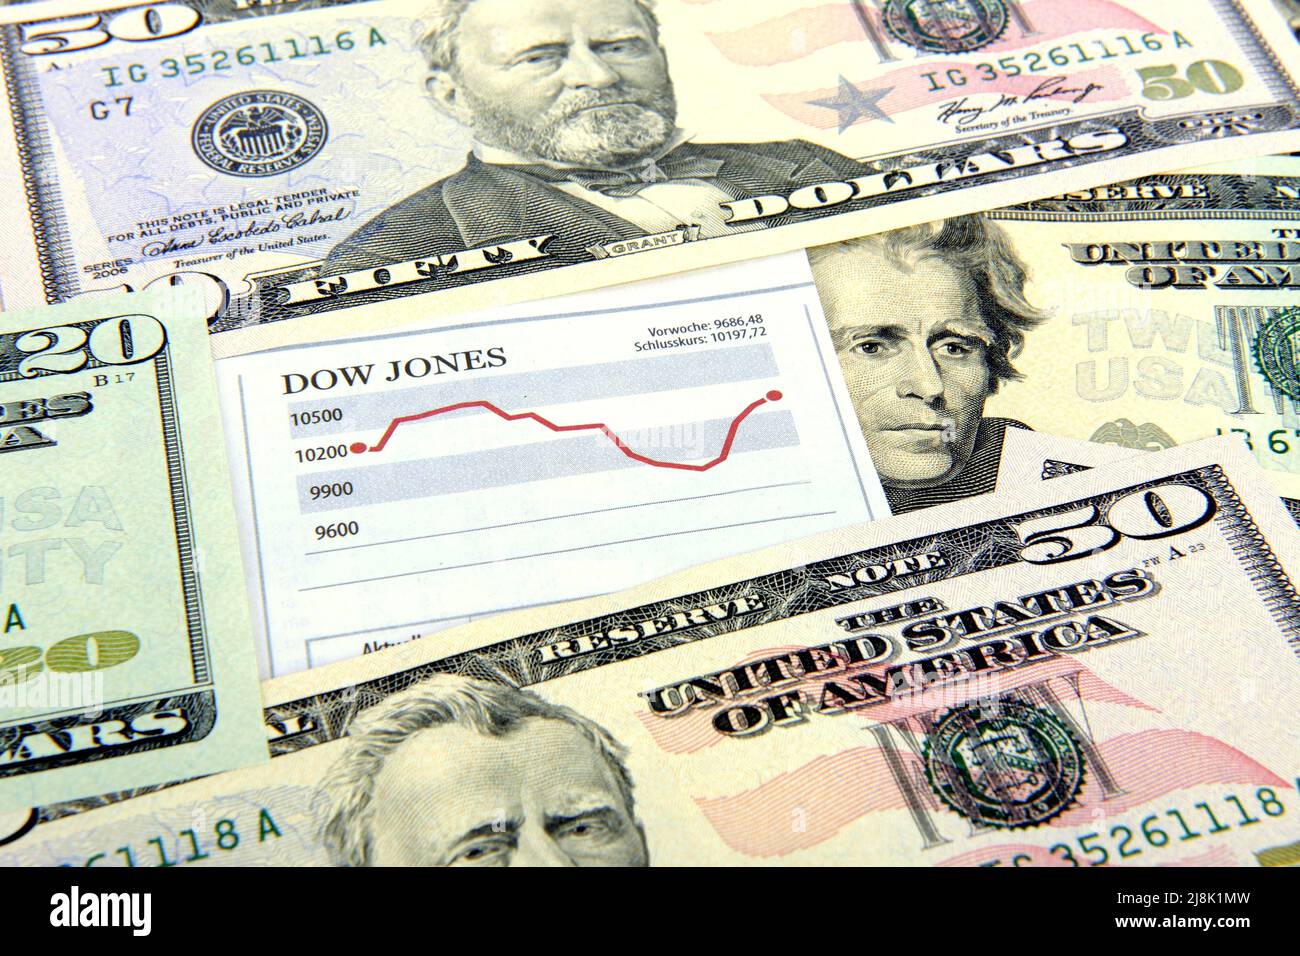 Billetes de 20 y 50 dólares con el precio de las acciones Dow Jones, EE.UU Foto de stock